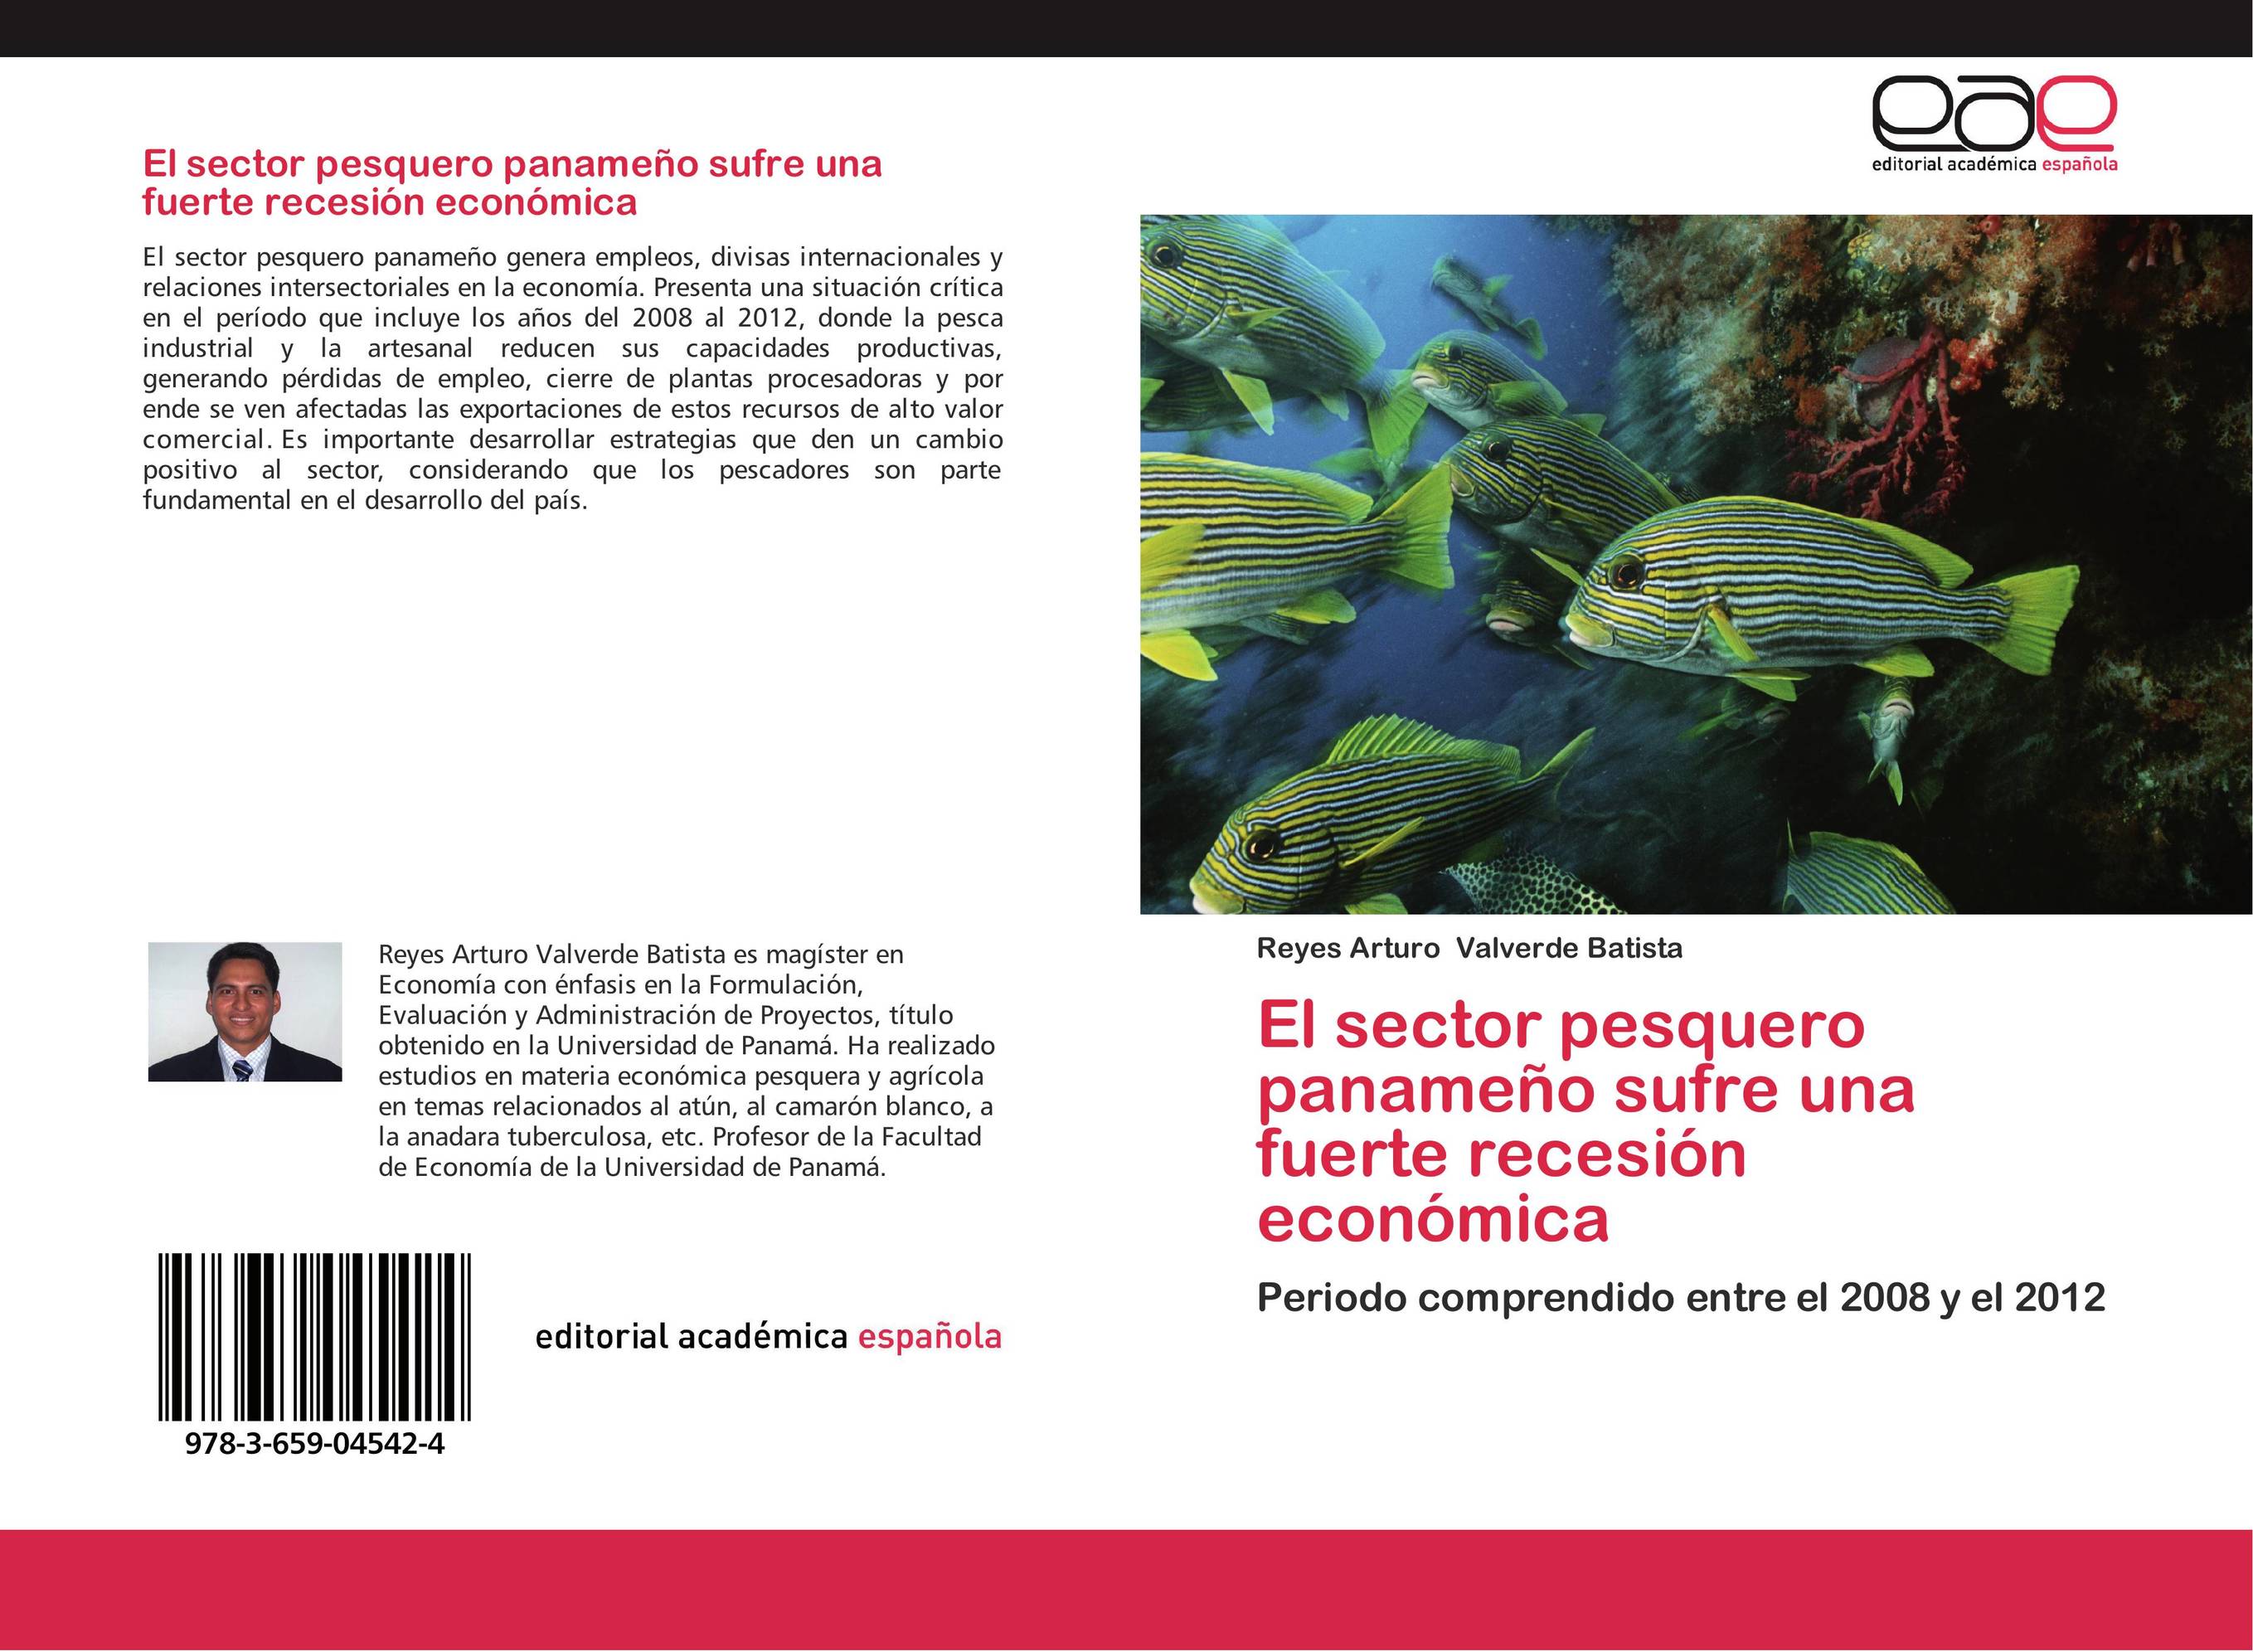 El sector pesquero panameño sufre una fuerte recesión económica